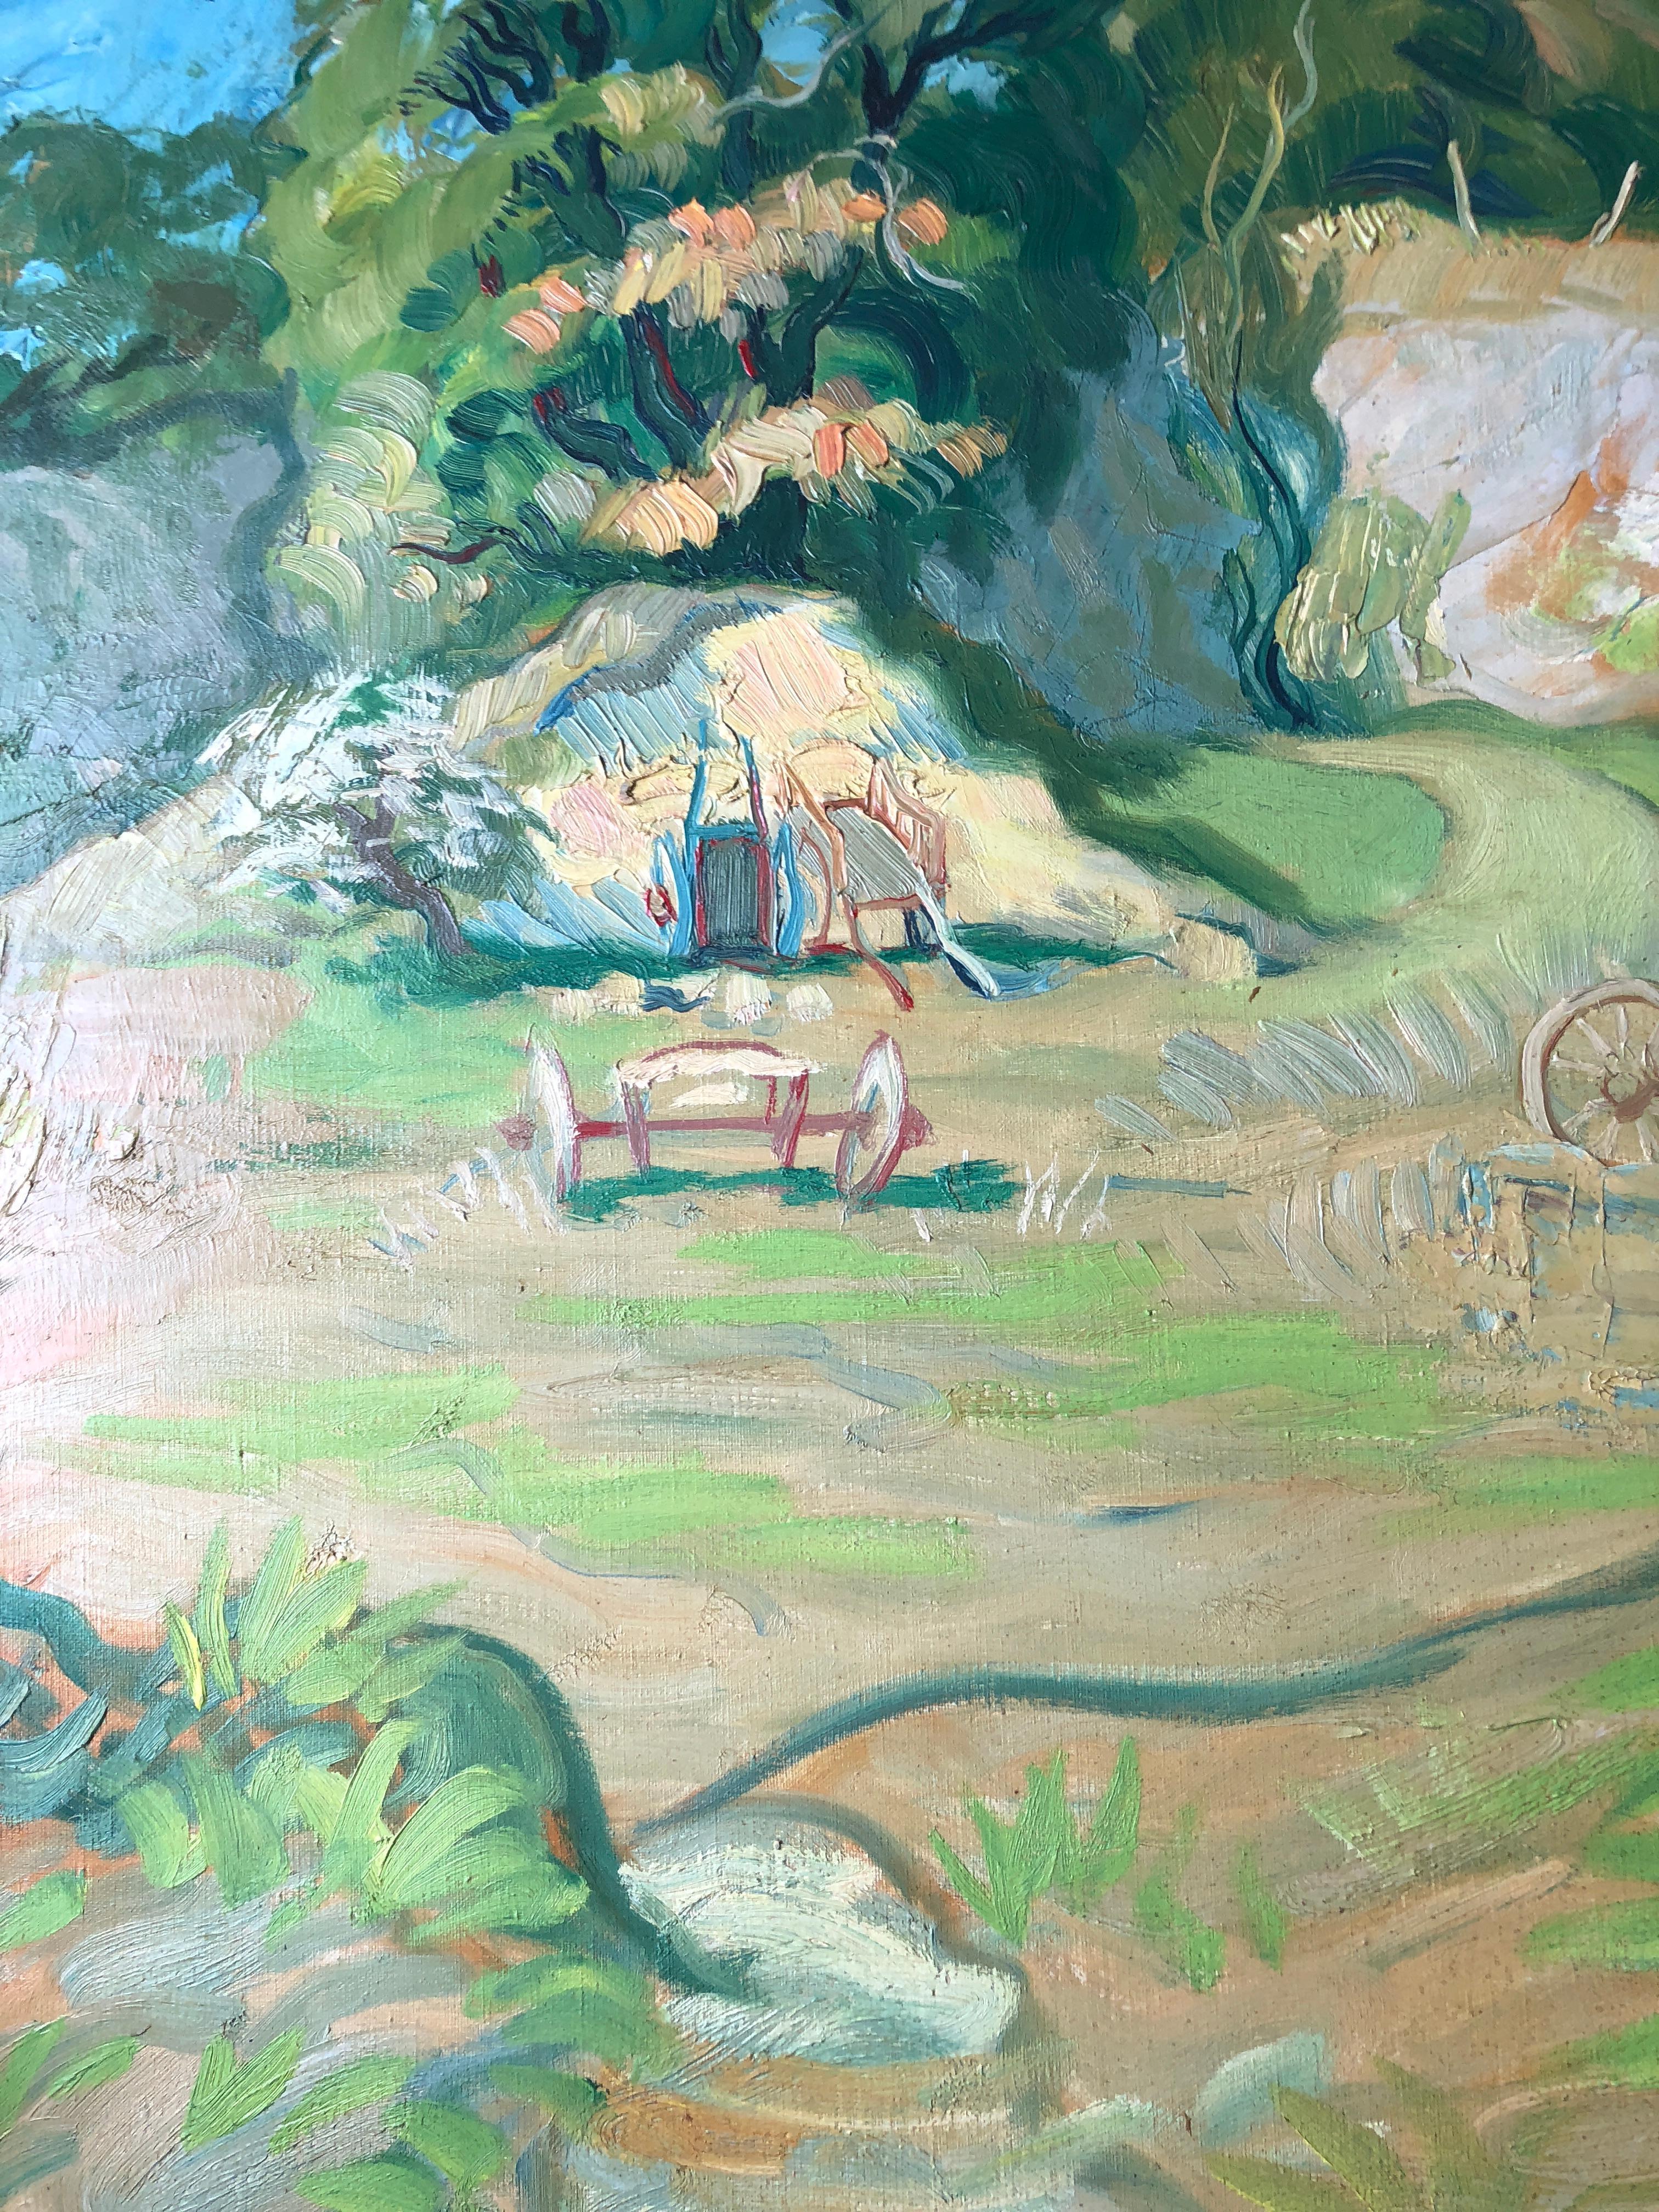 Paysage de ferme, peinture à l'huile signée
Par l'artiste français Claude Benard, (1926 - 2016)
Signé par l'artiste dans le coin inférieur gauche,
Peinture à l'huile sur toile, non encadrée
taille de la toile : 31.5 x 41.75 pouces

Superbe peinture